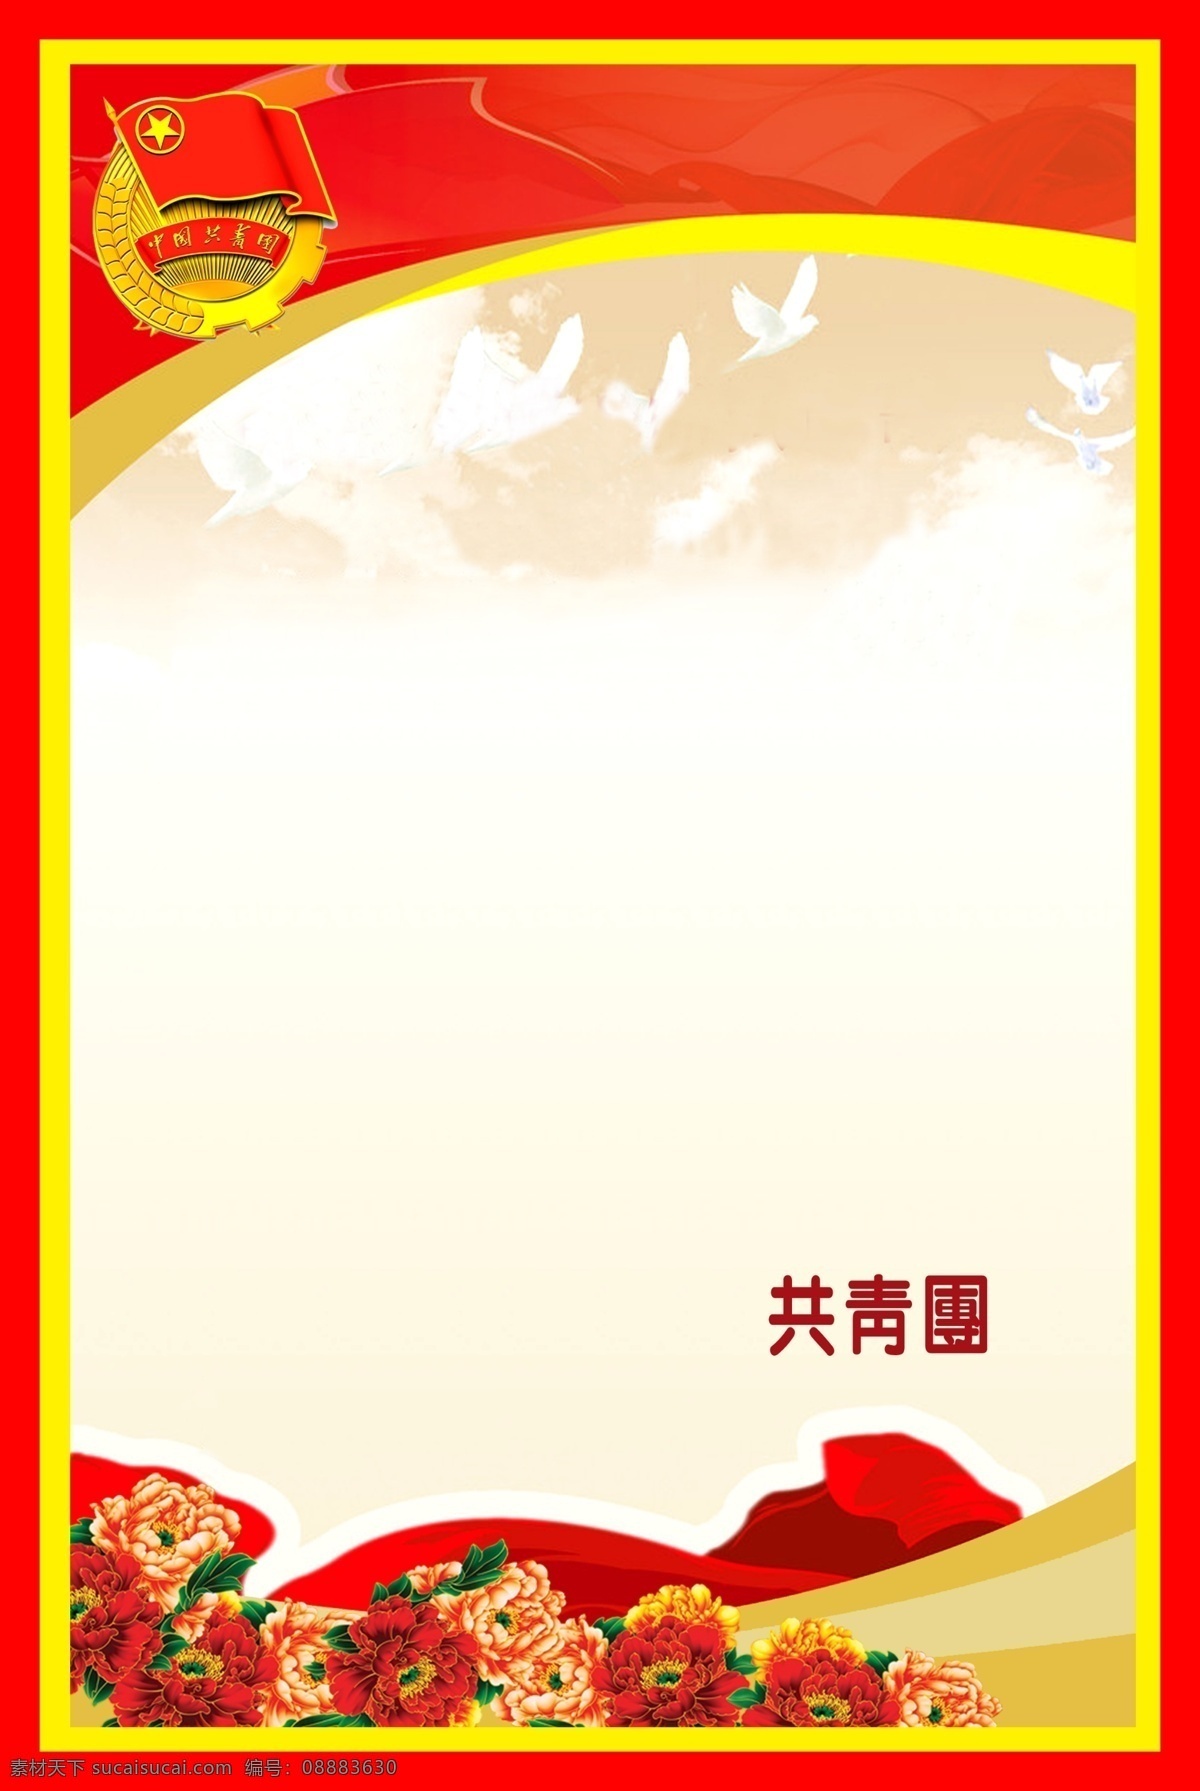 共青团 中国共青团 鲜花 共青团标志 鸽子 共青团展板 广告设计模板 源文件